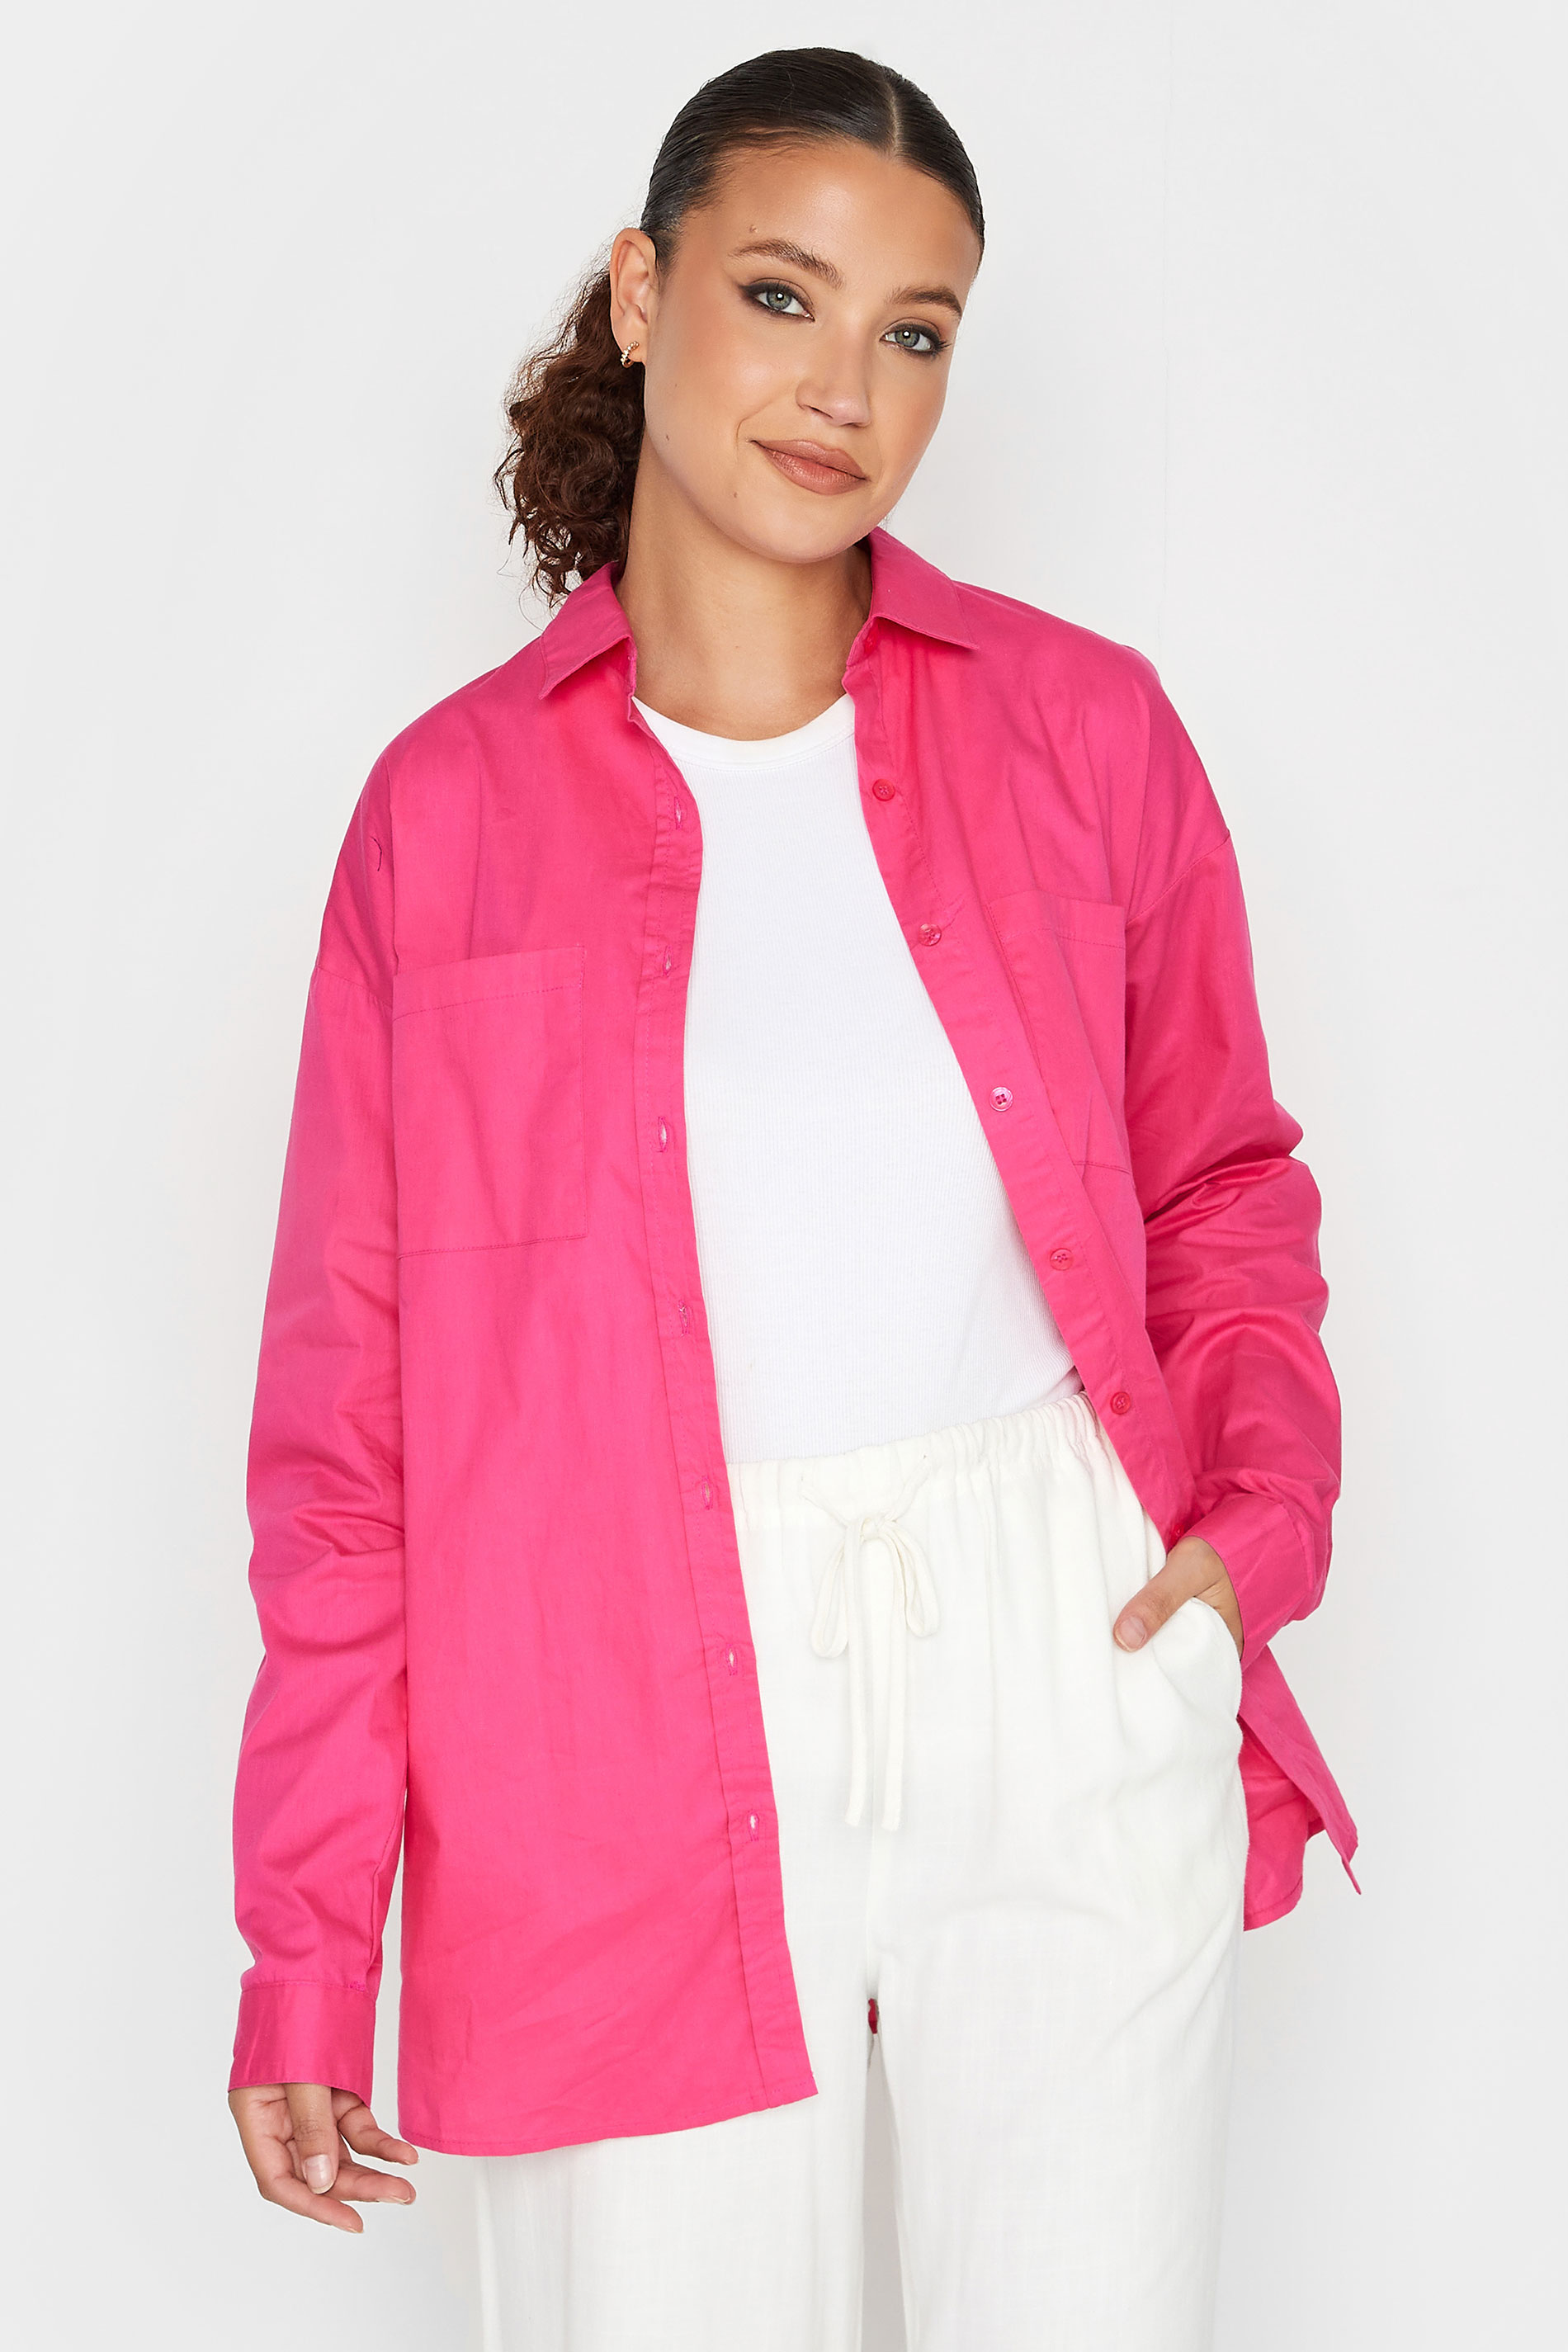 LTS Tall Women's Hot Pink Oversized Cotton Shirt